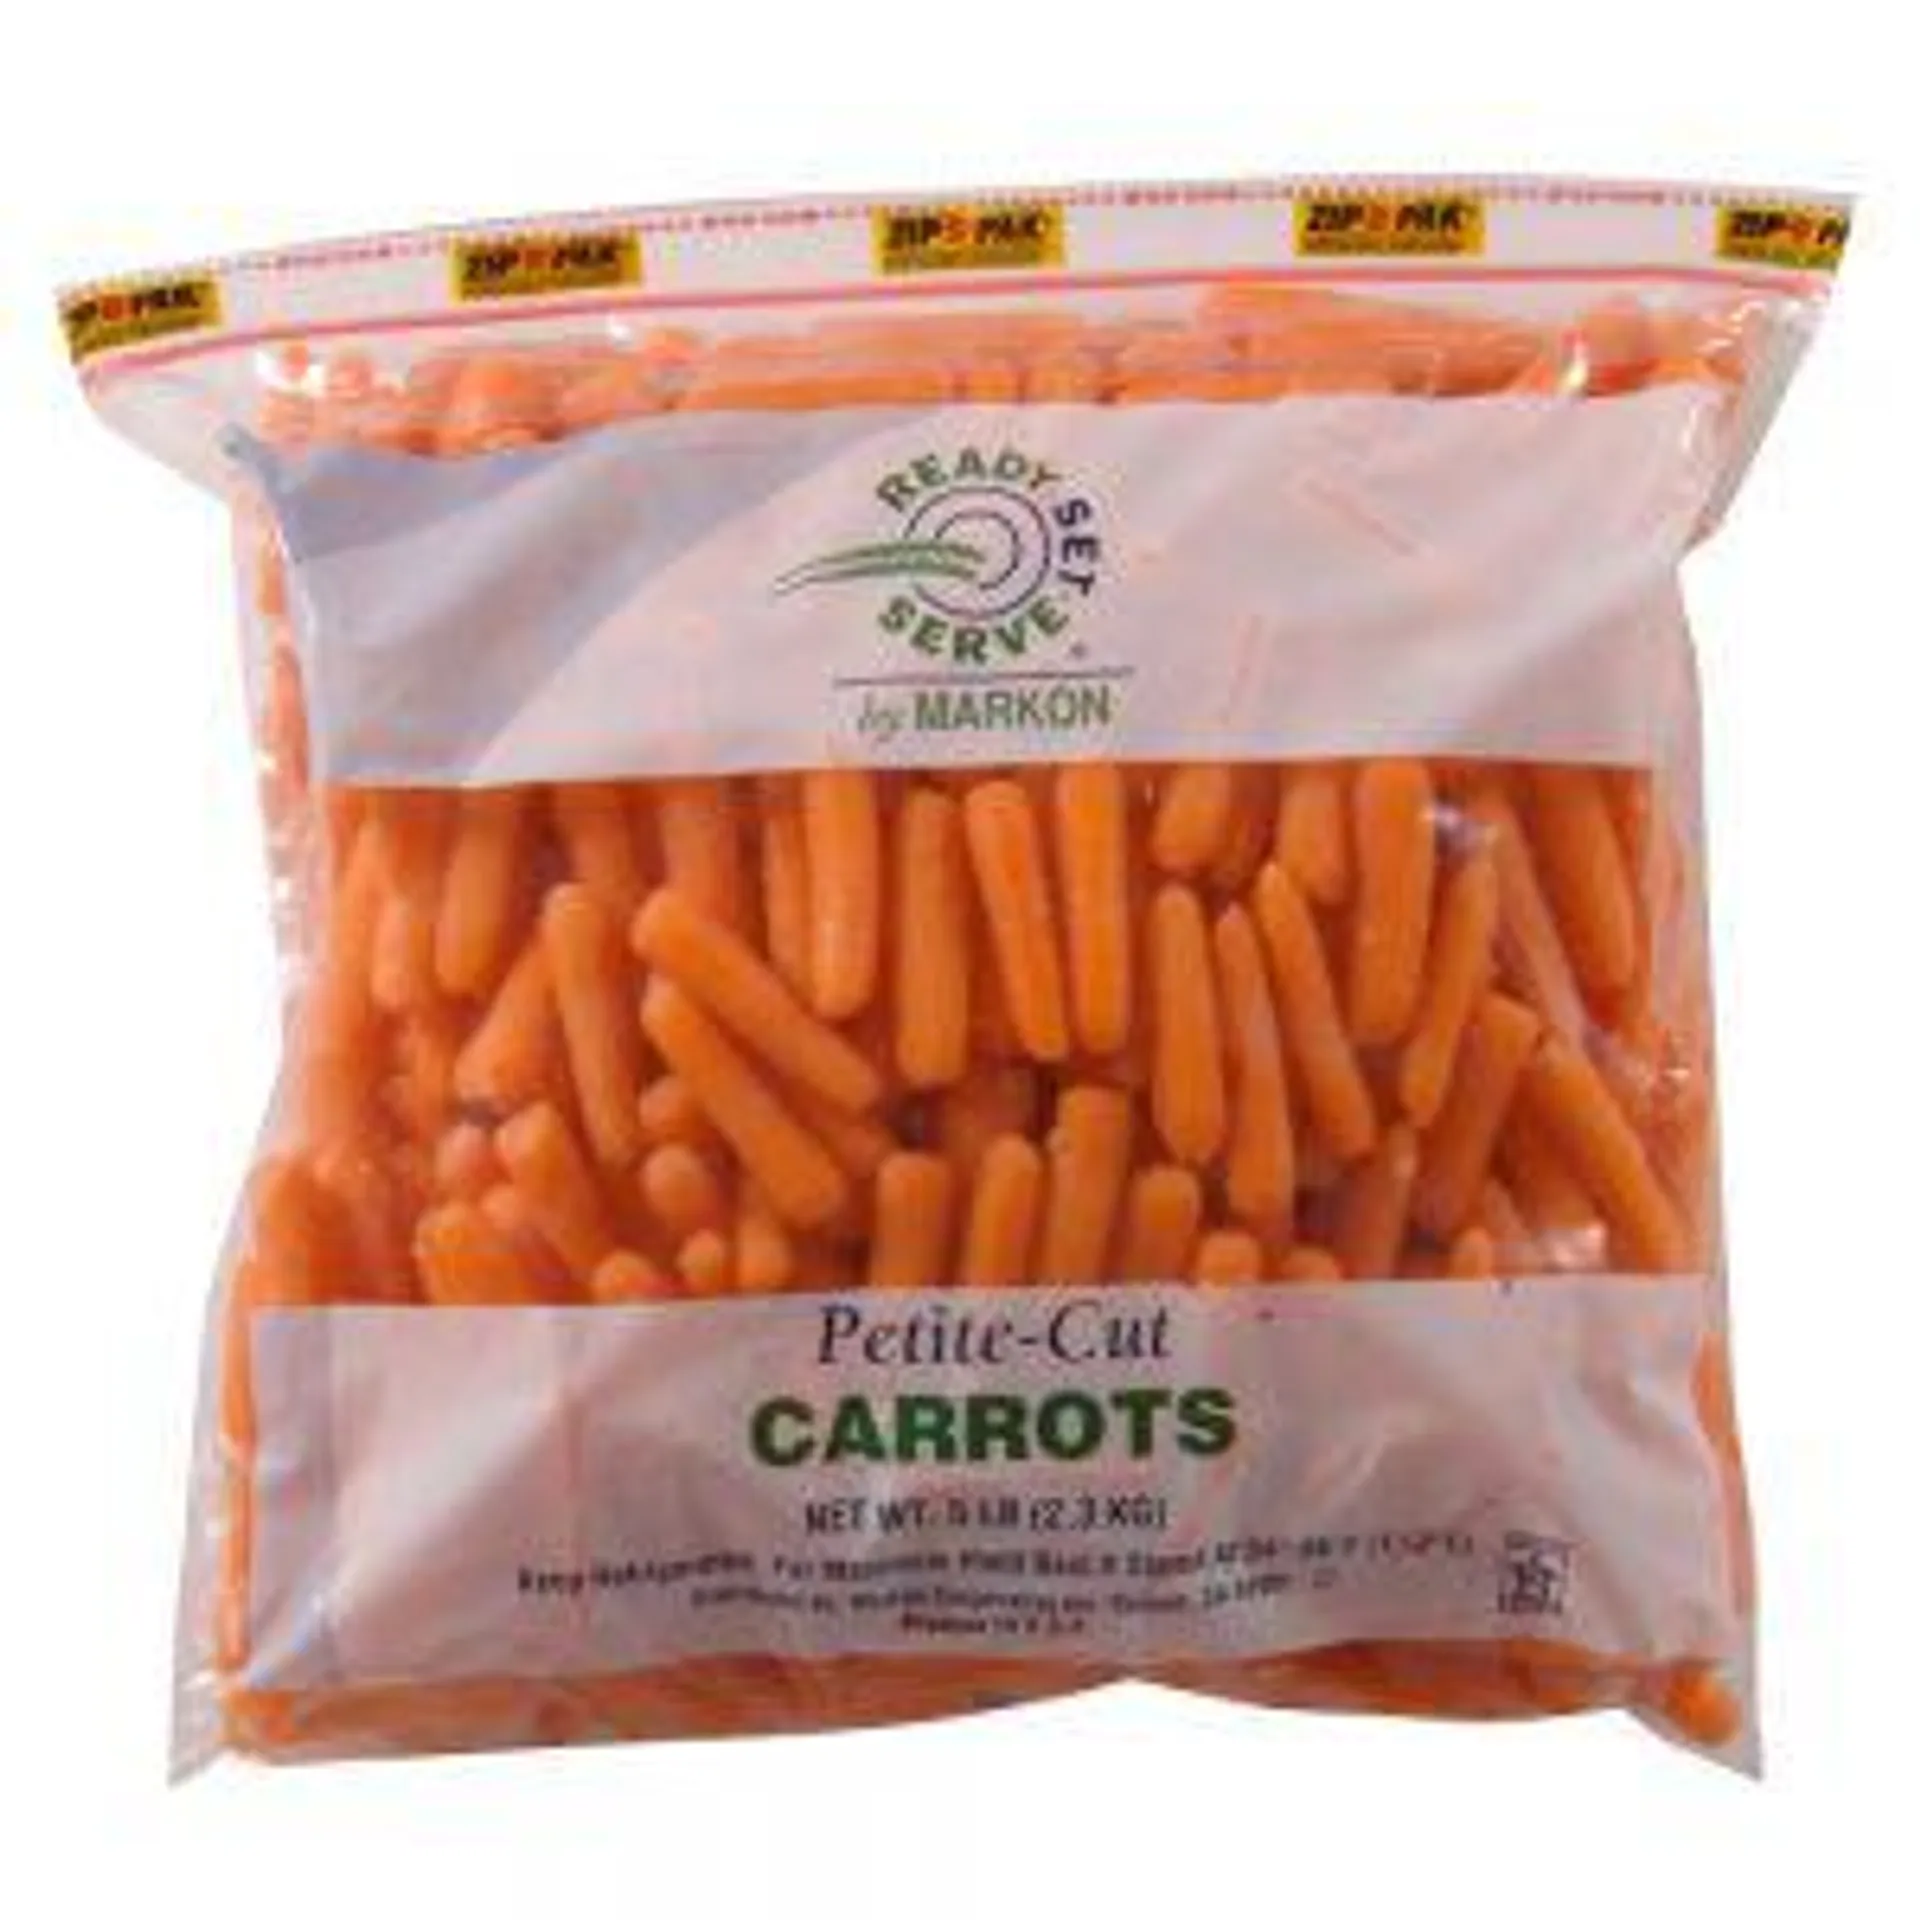 Petite-Cut Carrots